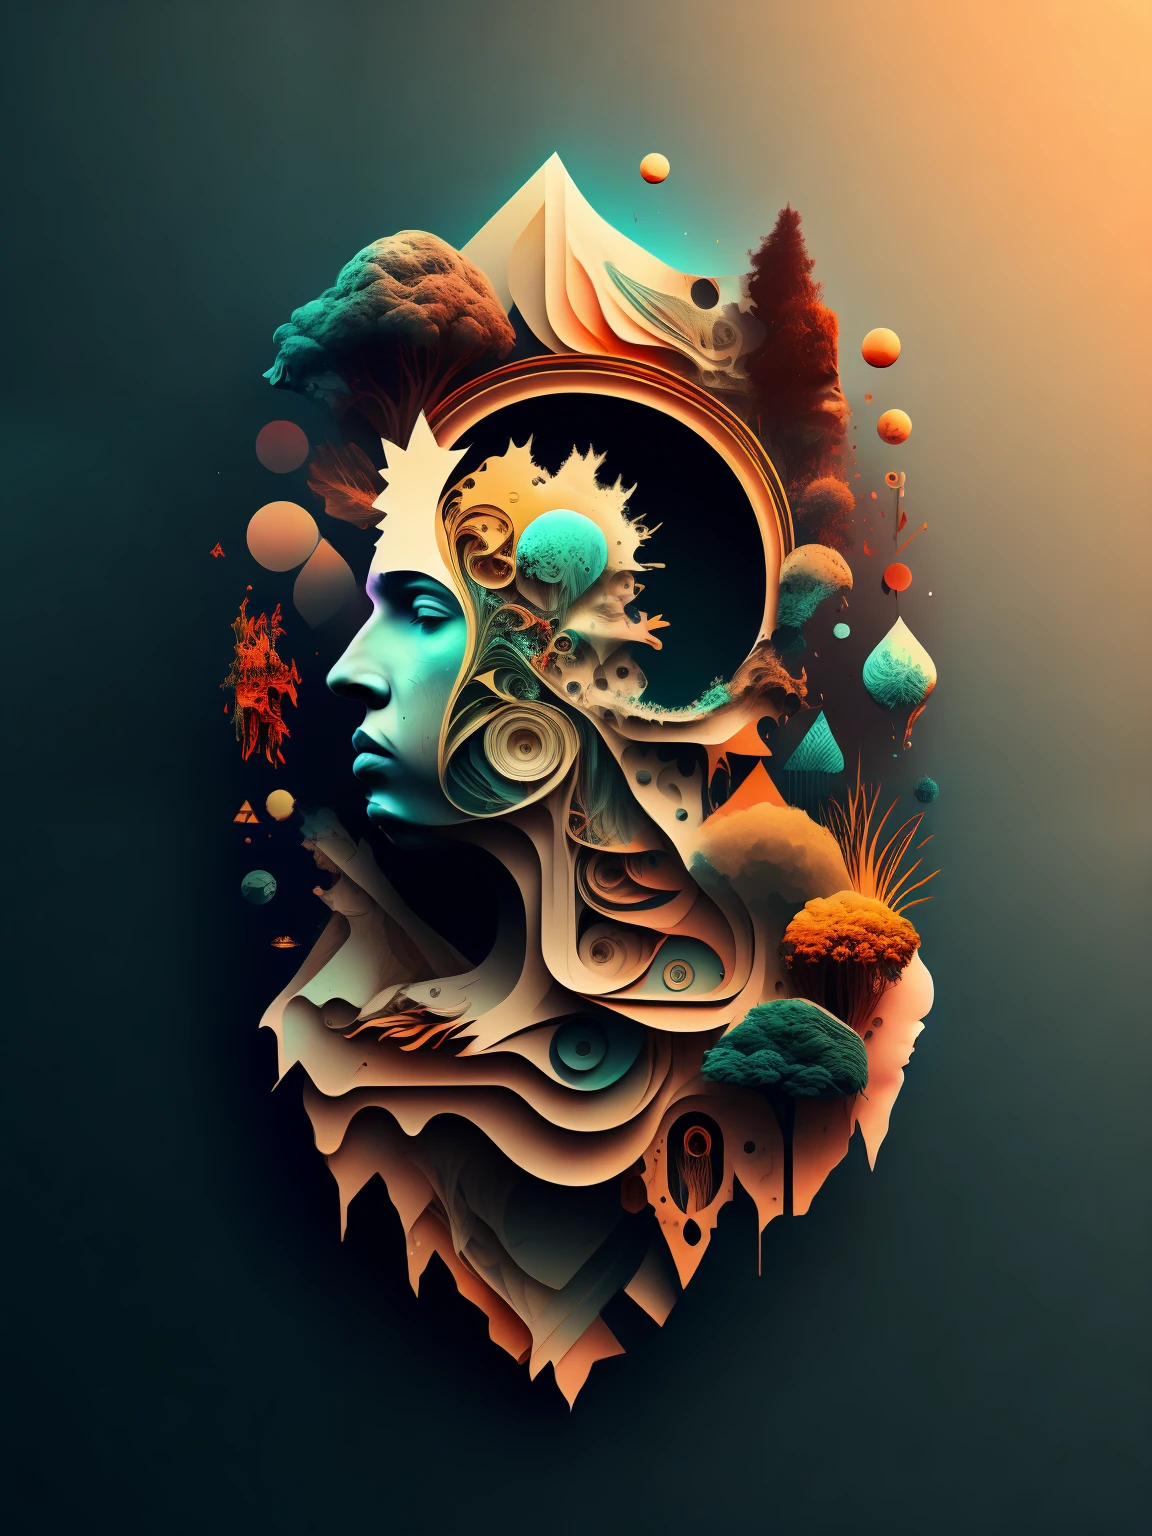 стилизованное изображение головы человека с множеством разных вещей в ней